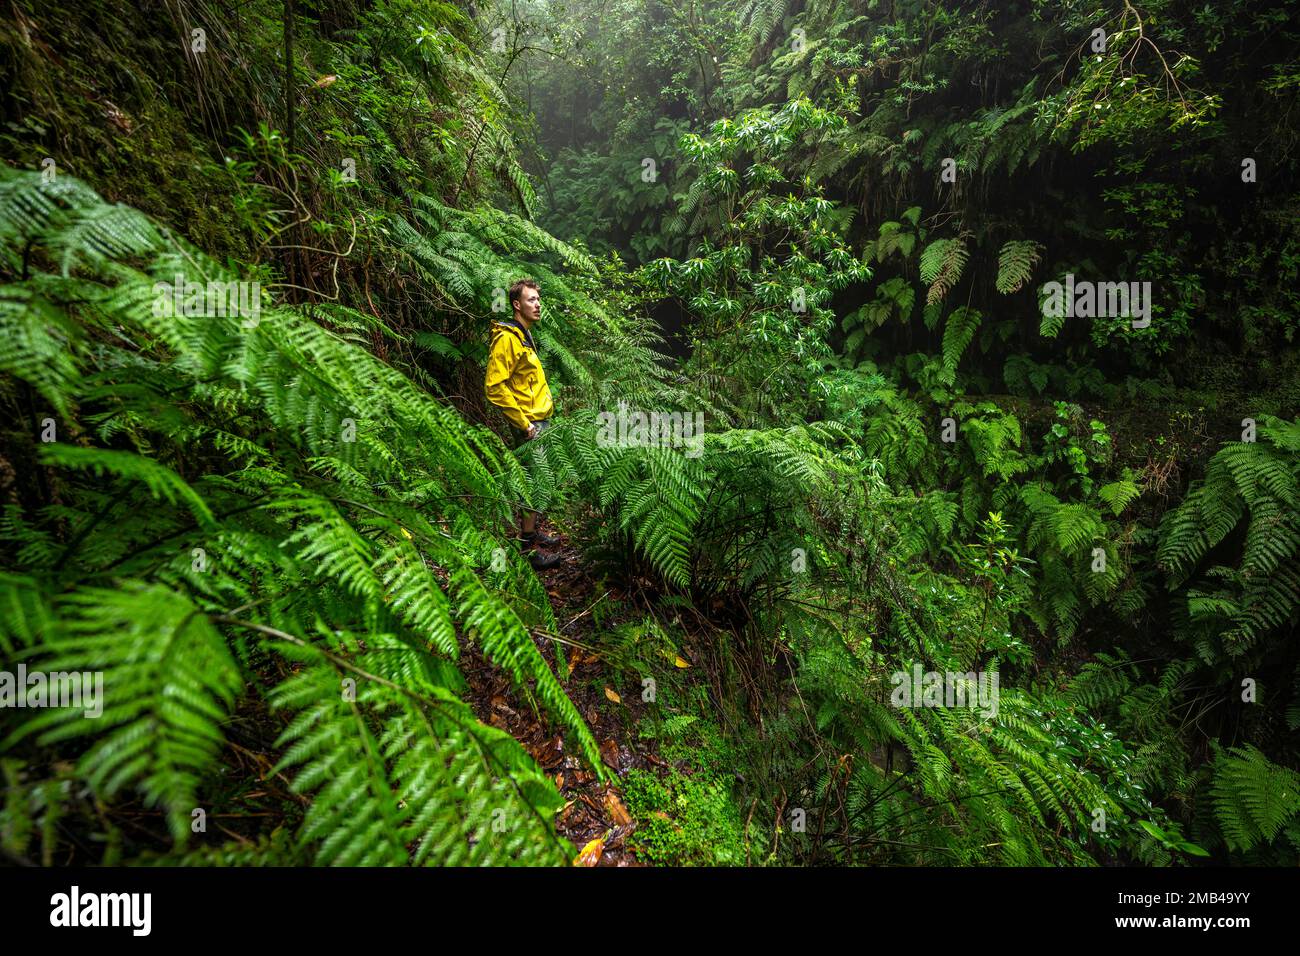 Escursionisti su uno stretto sentiero tra felci, in una foresta densamente coltivata, Levada do Caldeirao Verde, Parque Florestal das Queimadas, Madeira, Portogallo Foto Stock